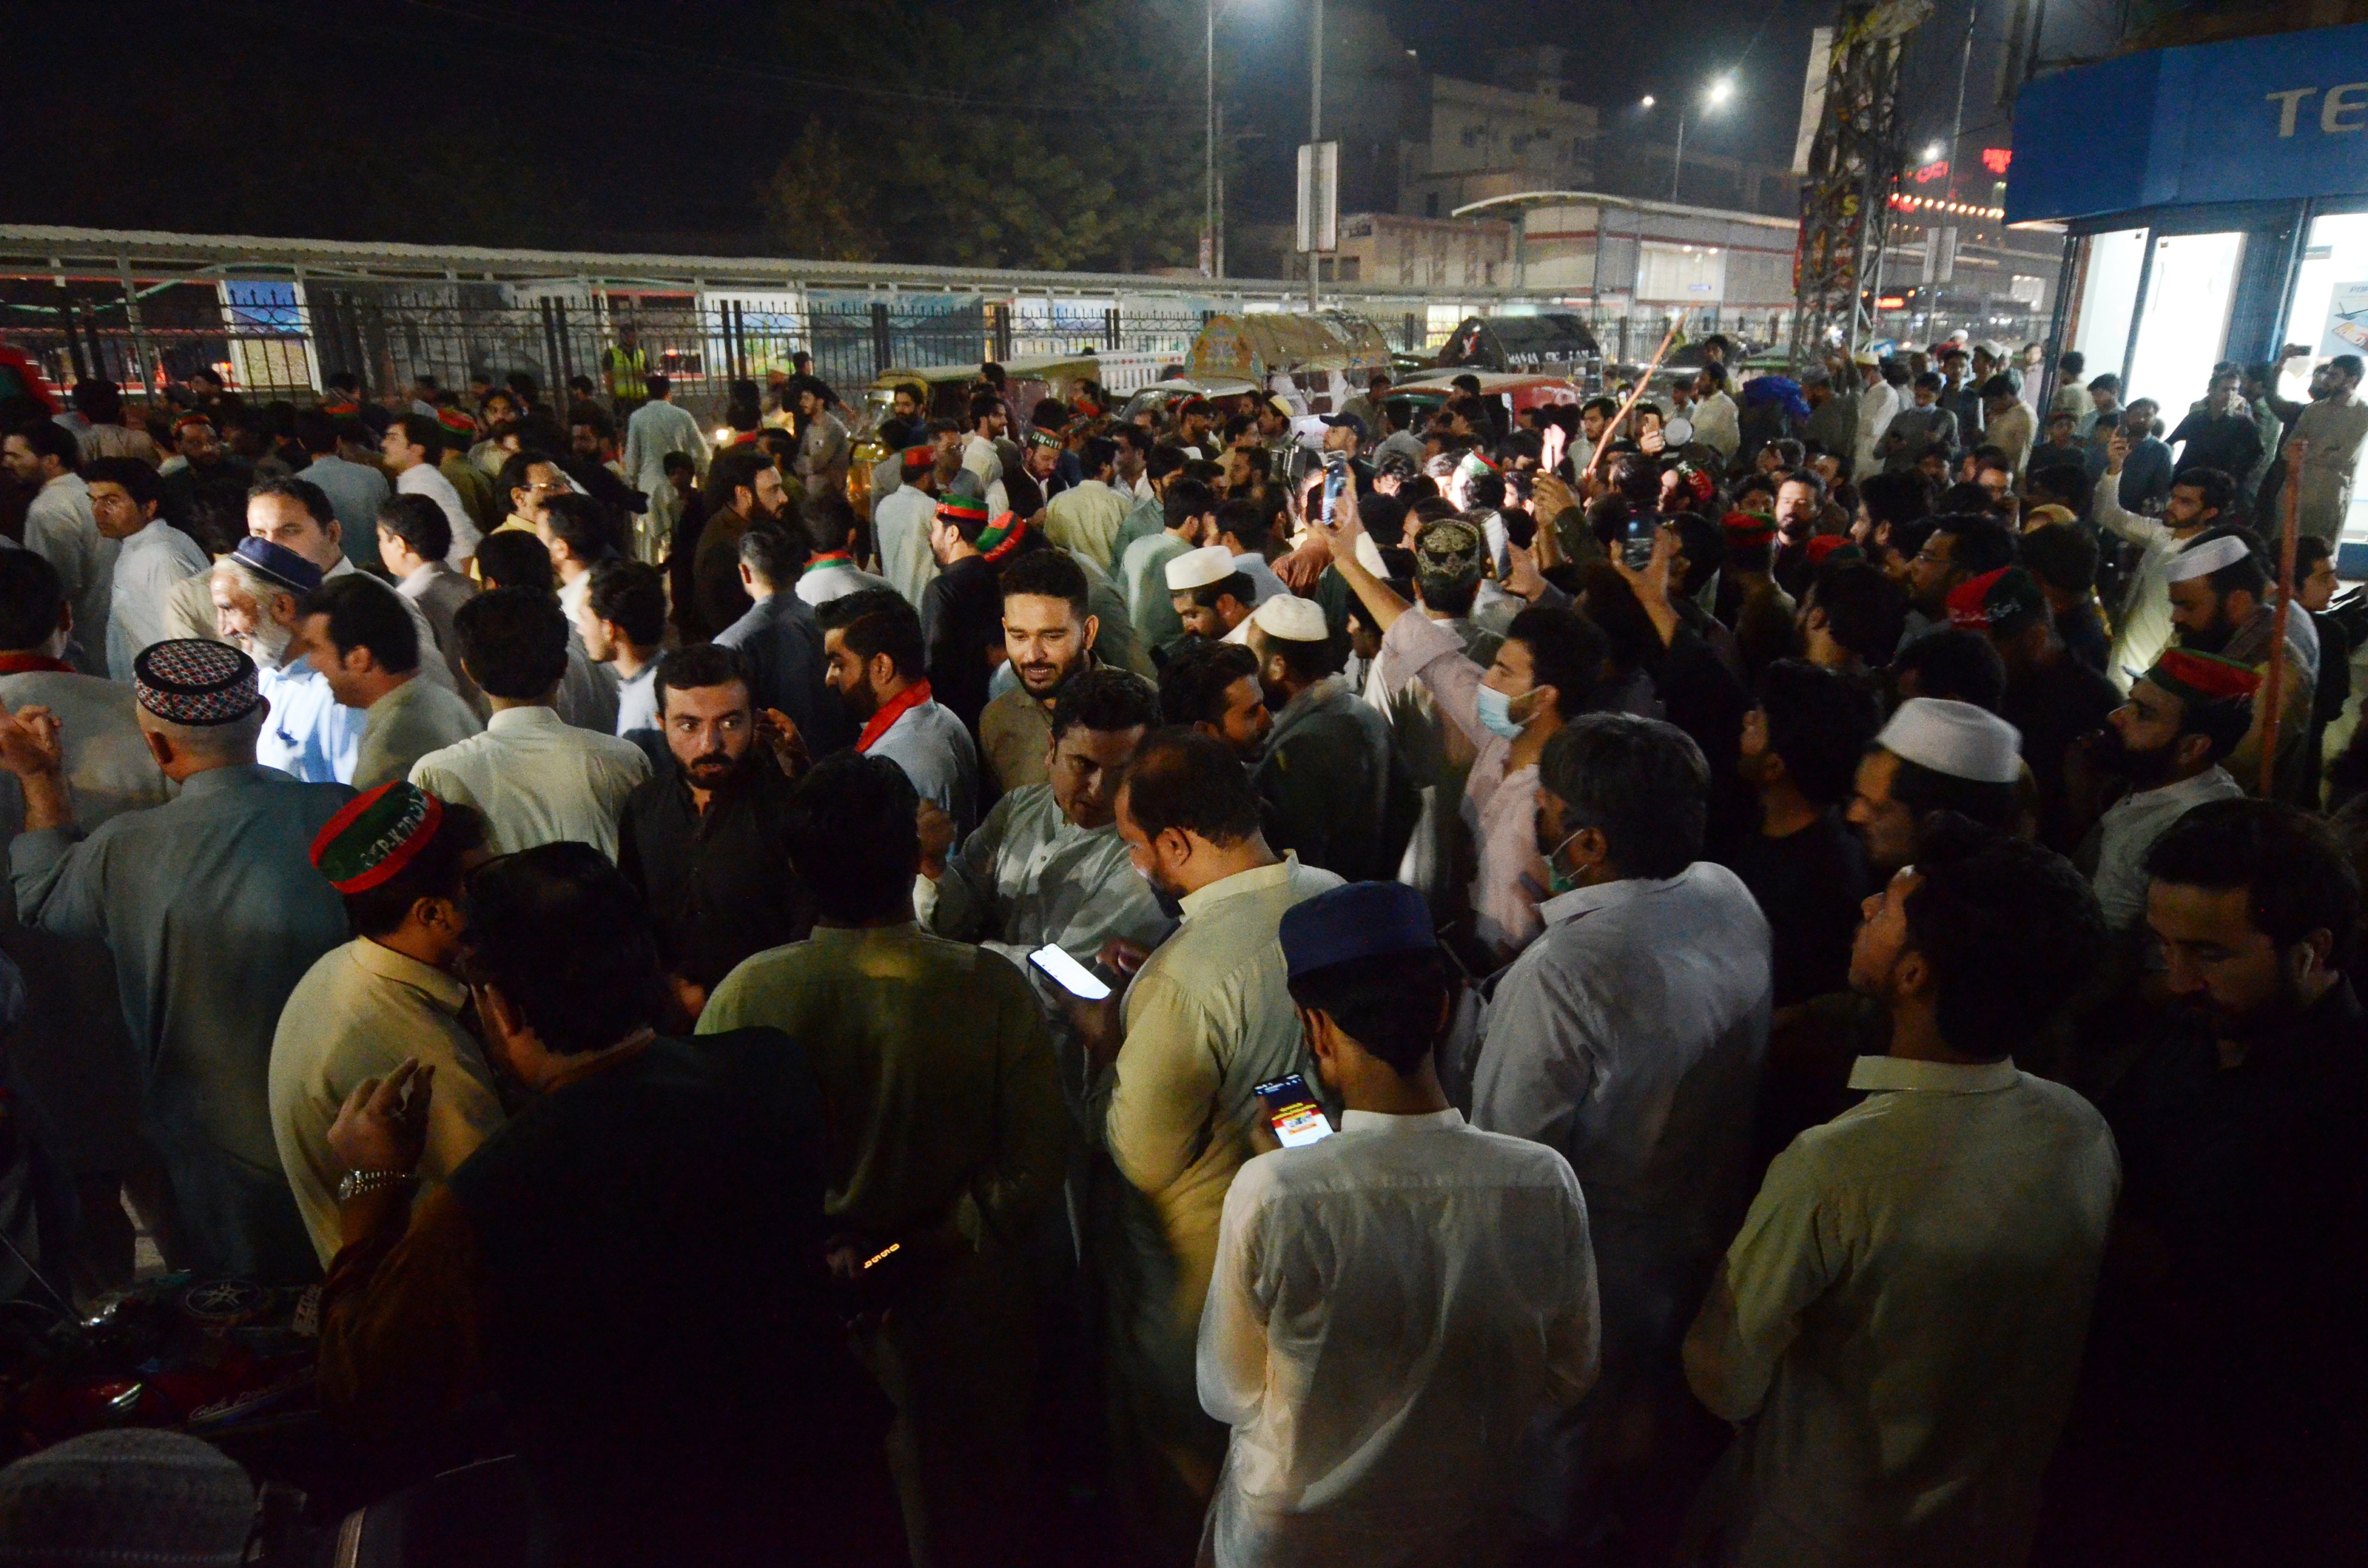 Protests erupt after assassination attempt on former Pakistani premier